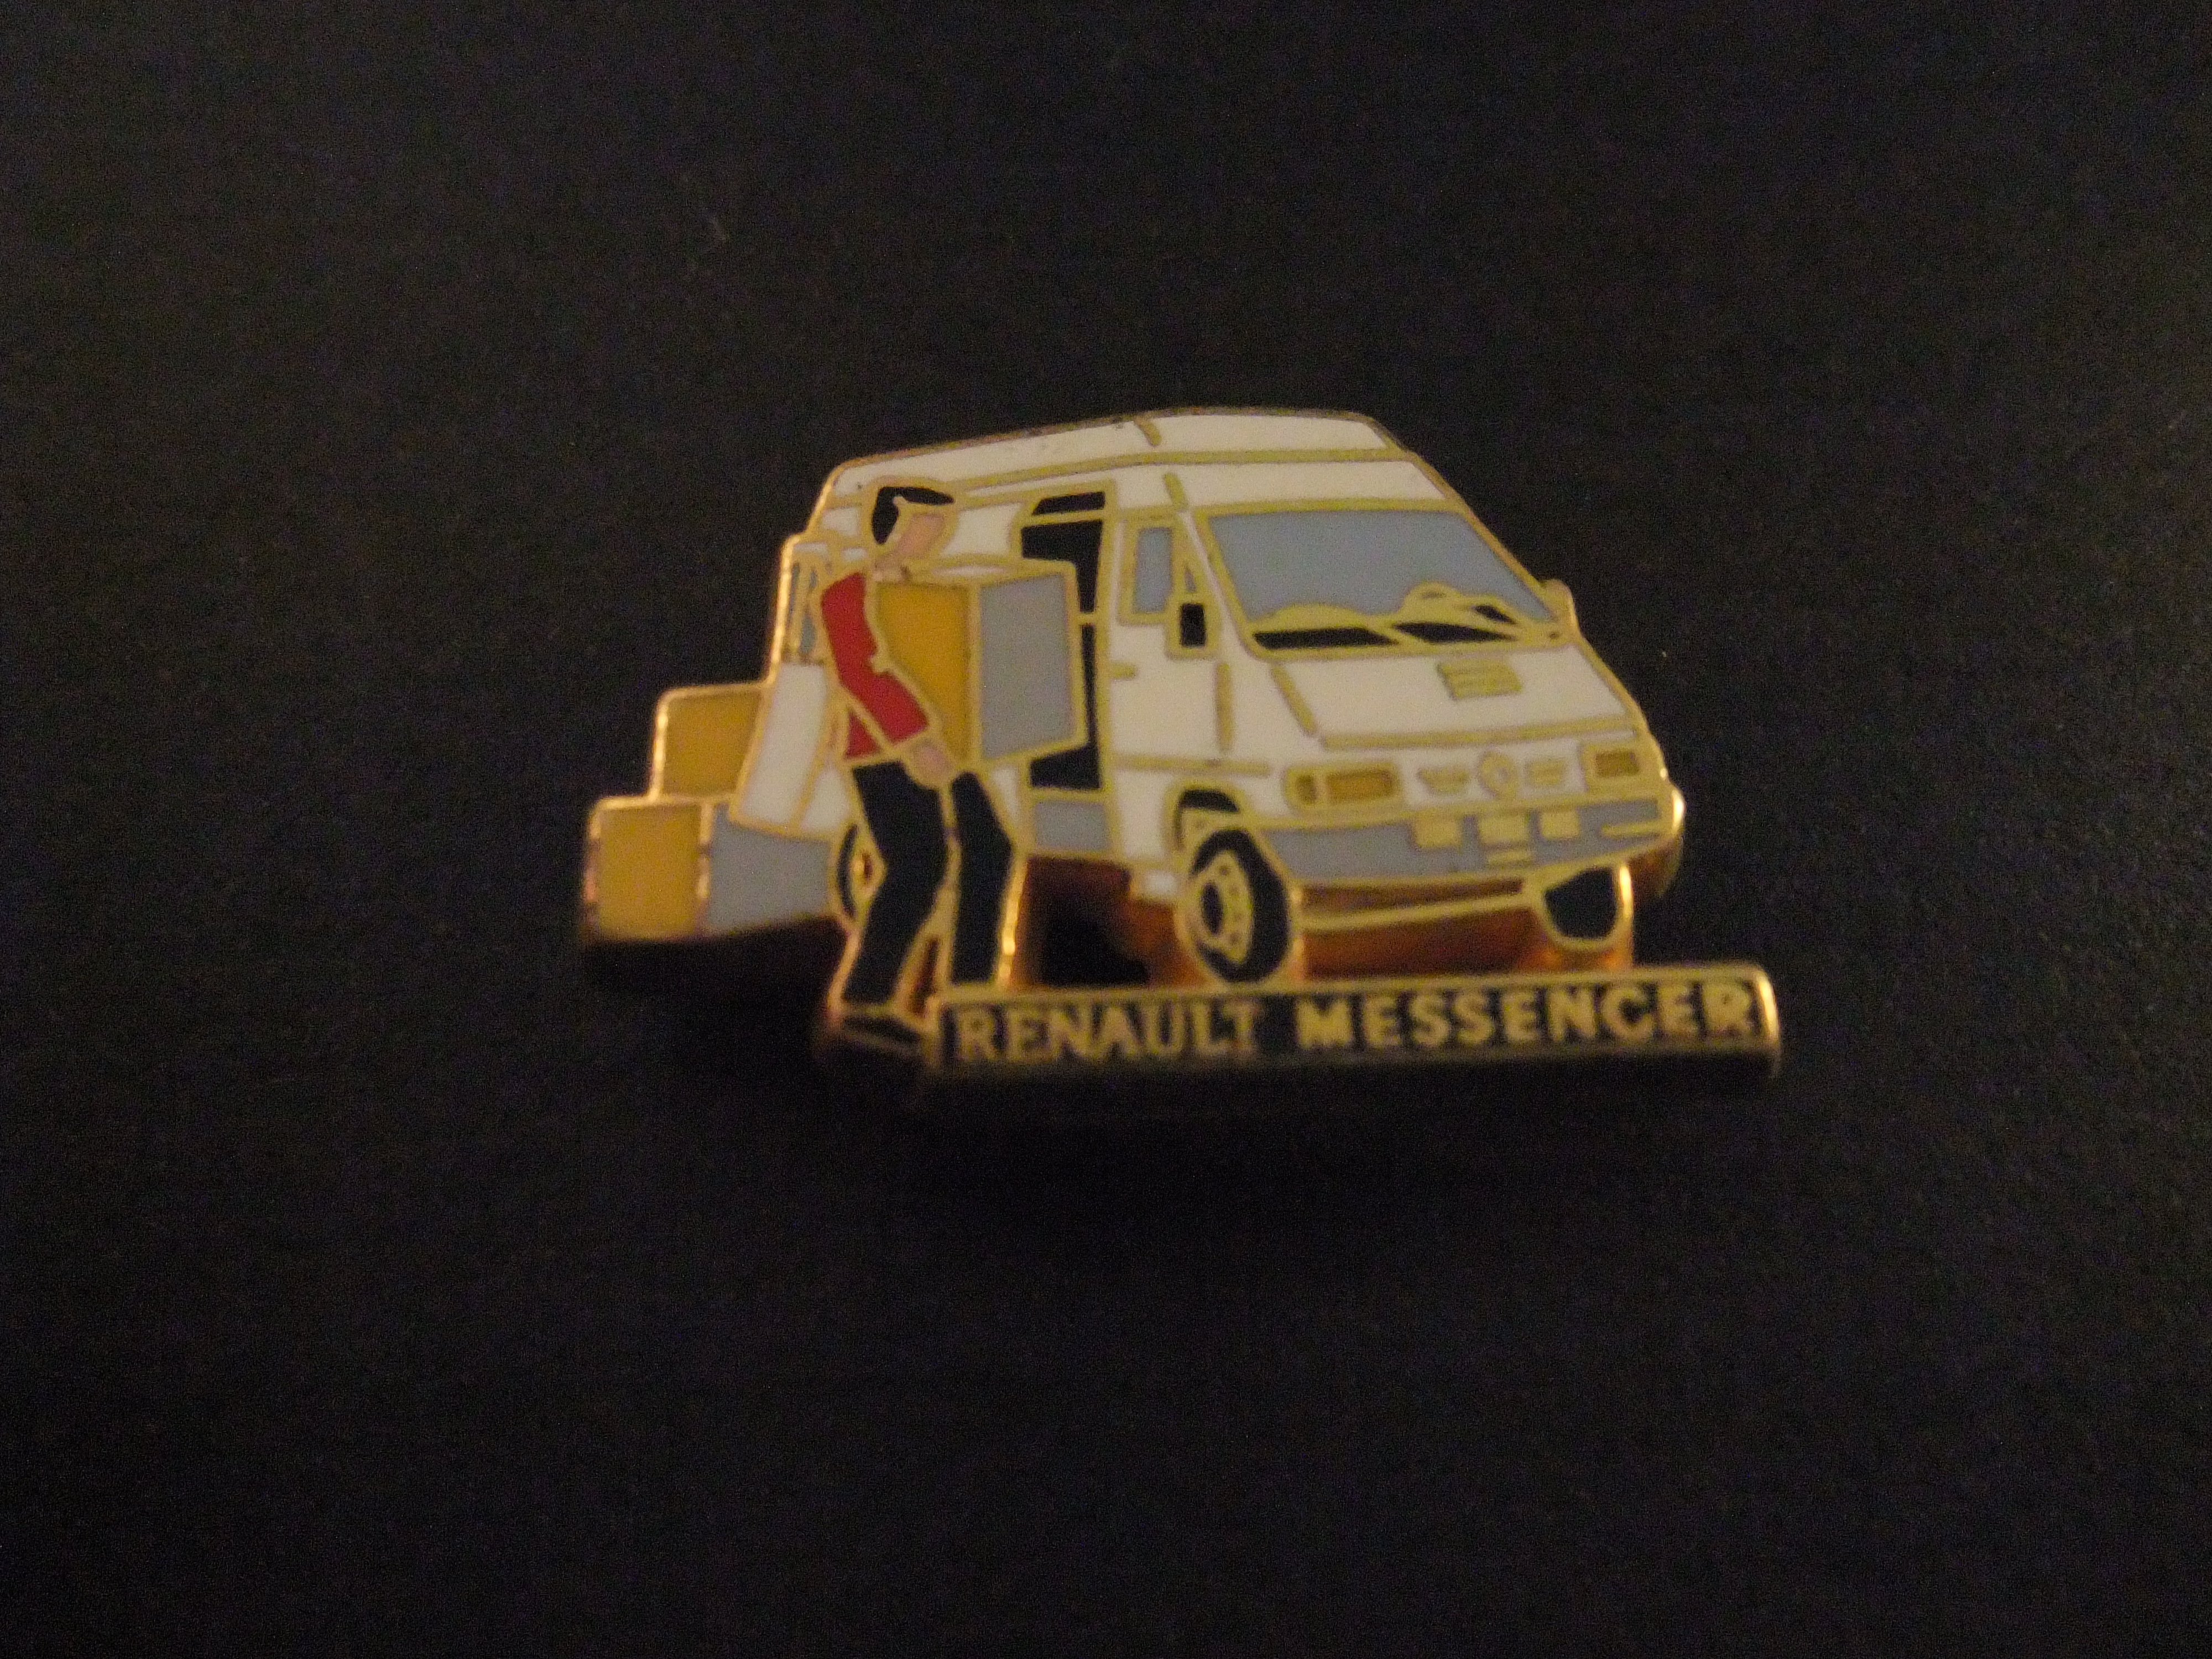 Renault Messenger bedrijfswagen ( verhuiswagen)